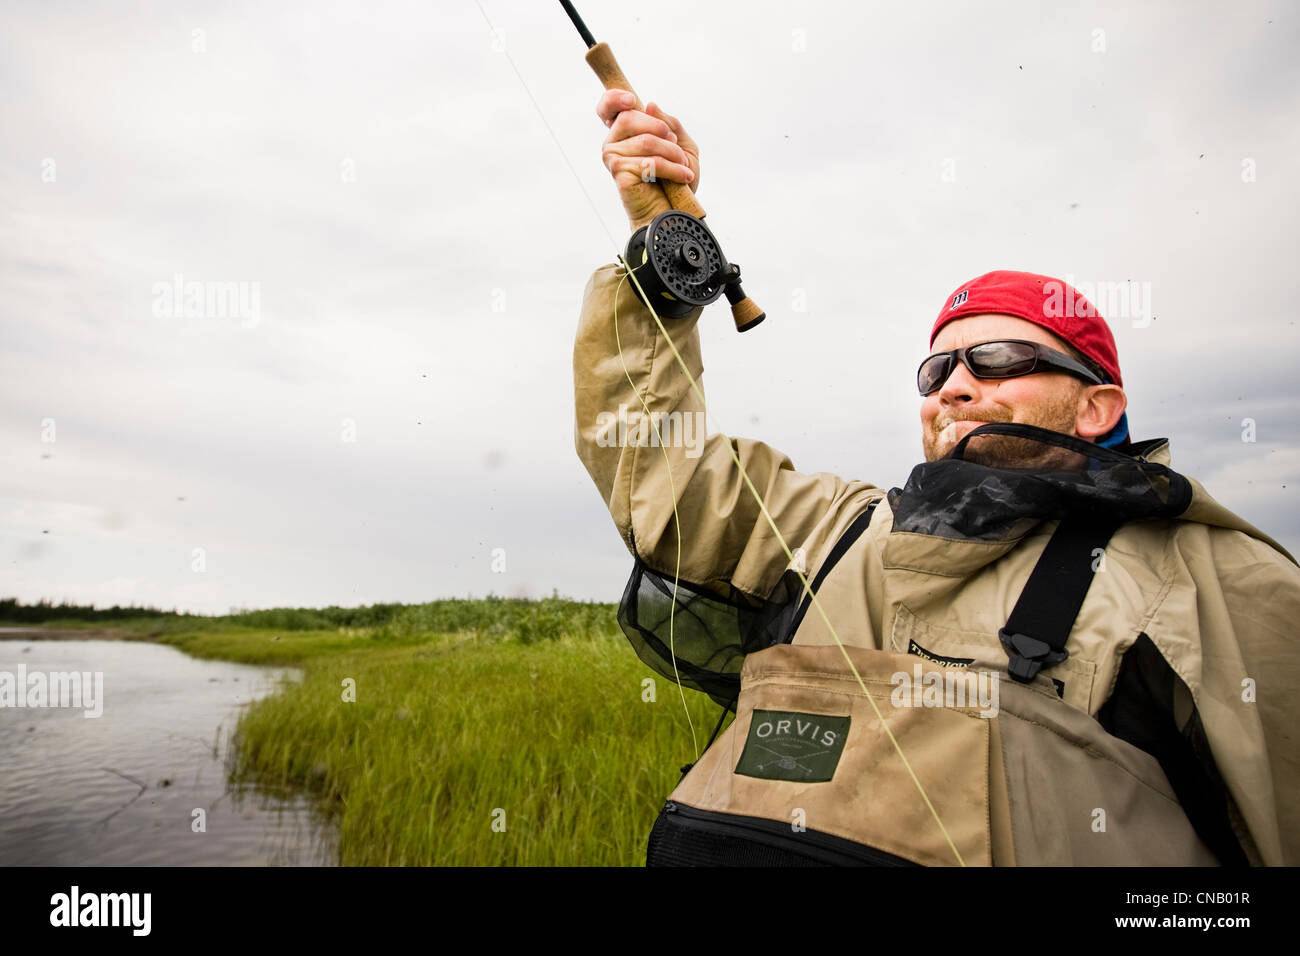 La pêche à la mouche La pêche du saumon sur la rivière Mulchatna dans la région de la baie de Bristol, sud-ouest de l'Alaska, l'été Banque D'Images